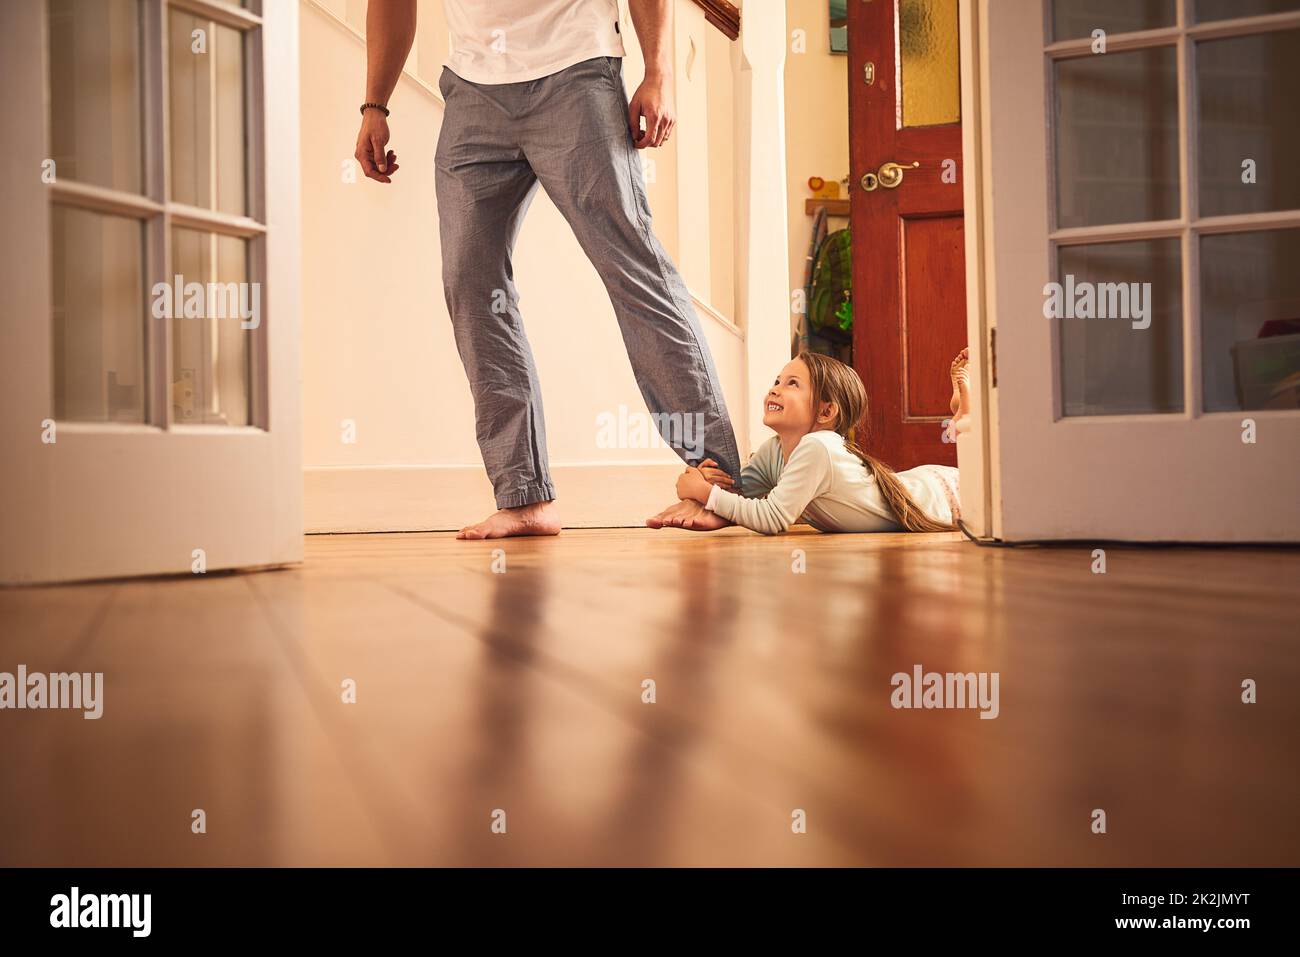 Ich gehe mit dir. Aufnahme eines fröhlichen kleinen Mädchens, das sich am Bein ihres Väter ergriff und nicht losließ, während es zu Hause auf dem Boden lag. Stockfoto